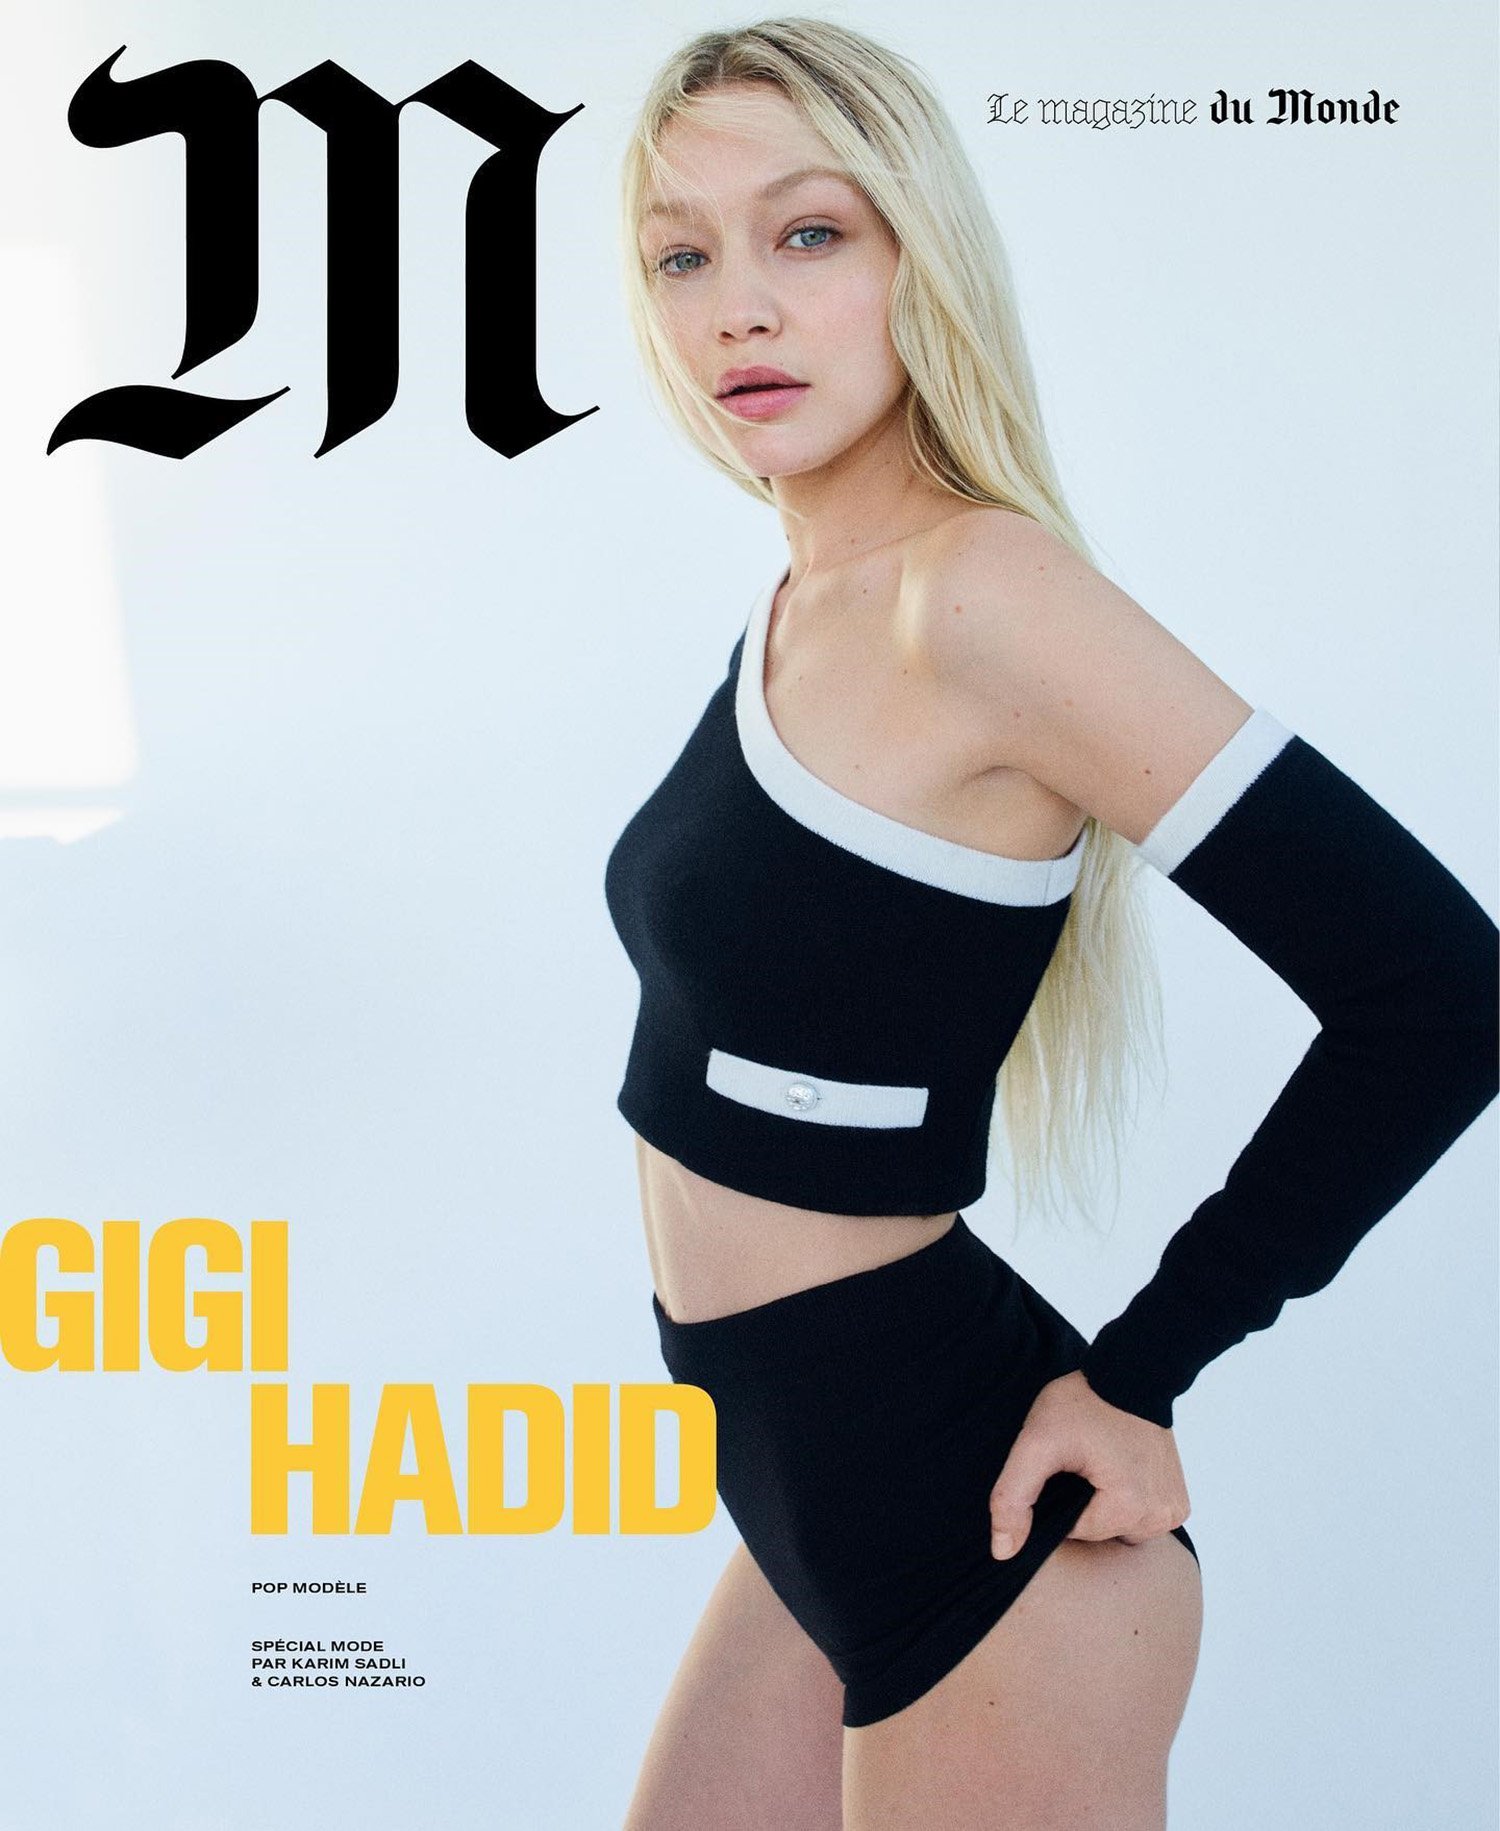 Gigi-Hadid-by-Karim-Sadli-M-Le-Magazine-du-Monde-00001.jpg